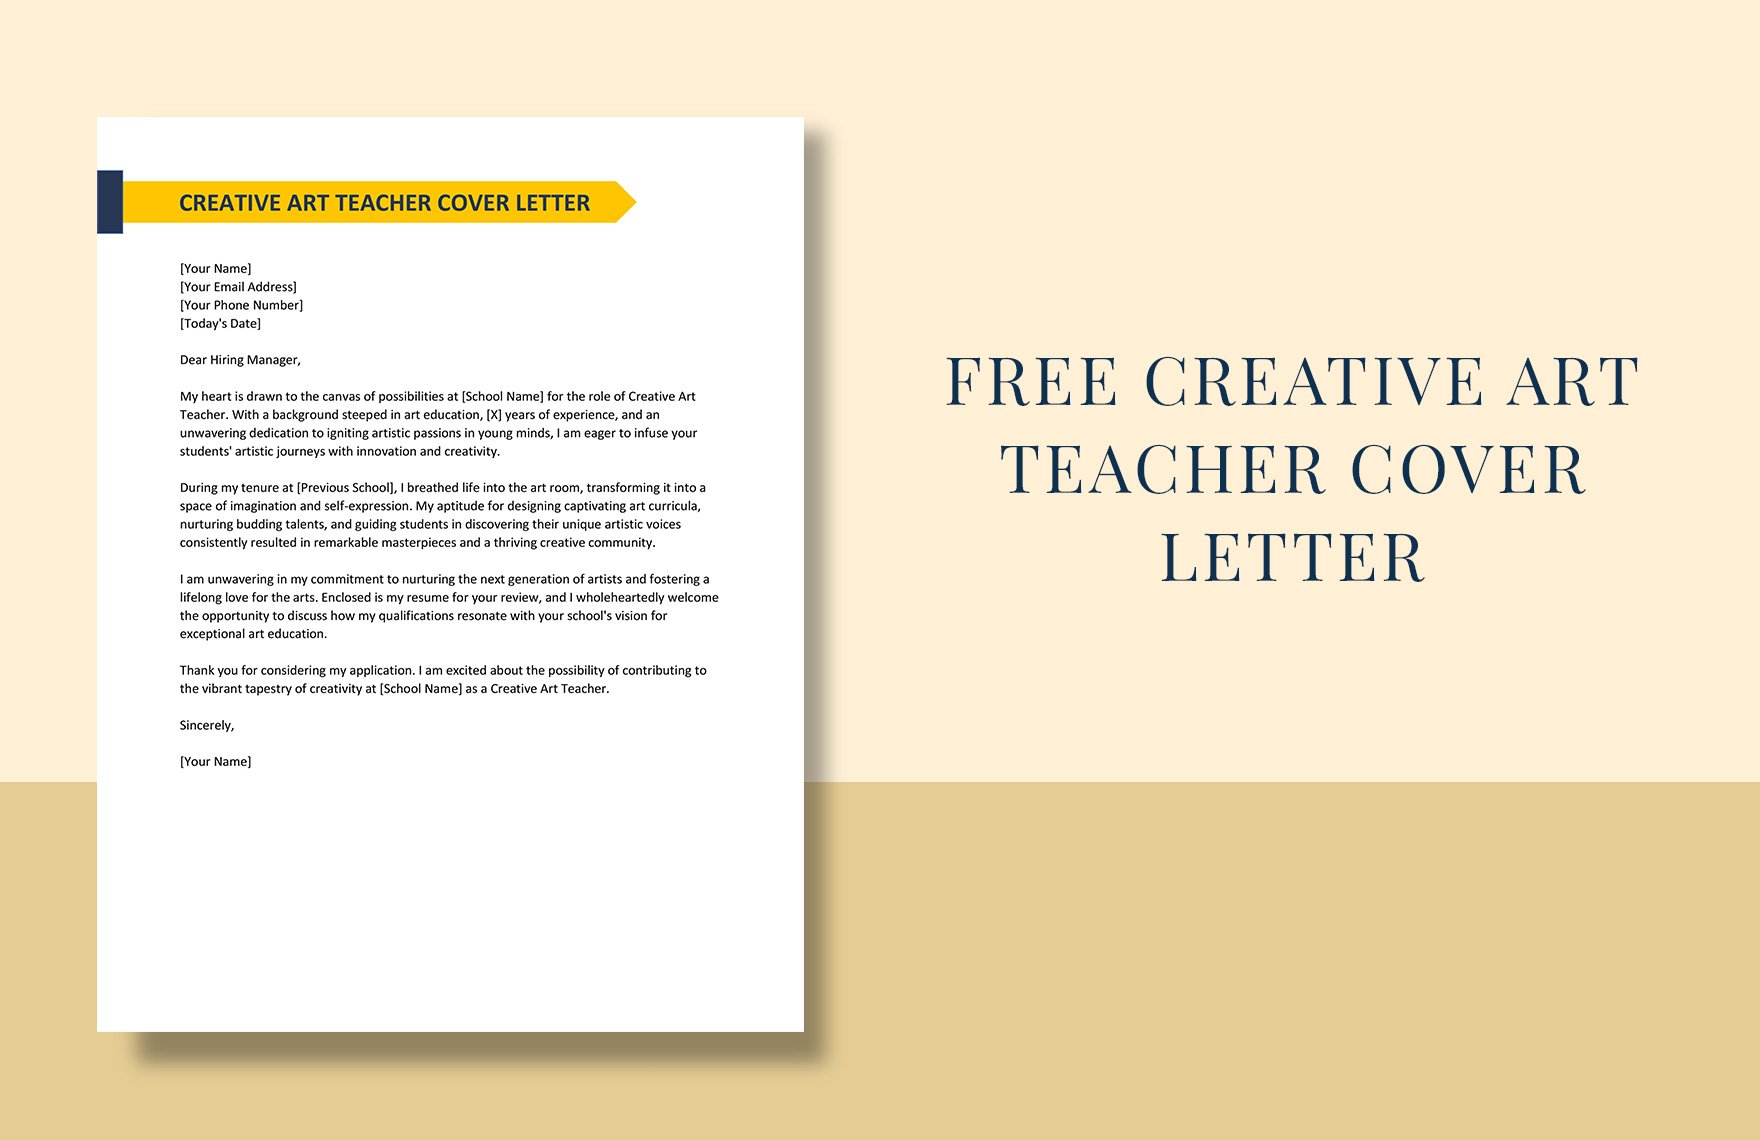 Creative Art Teacher Cover Letter